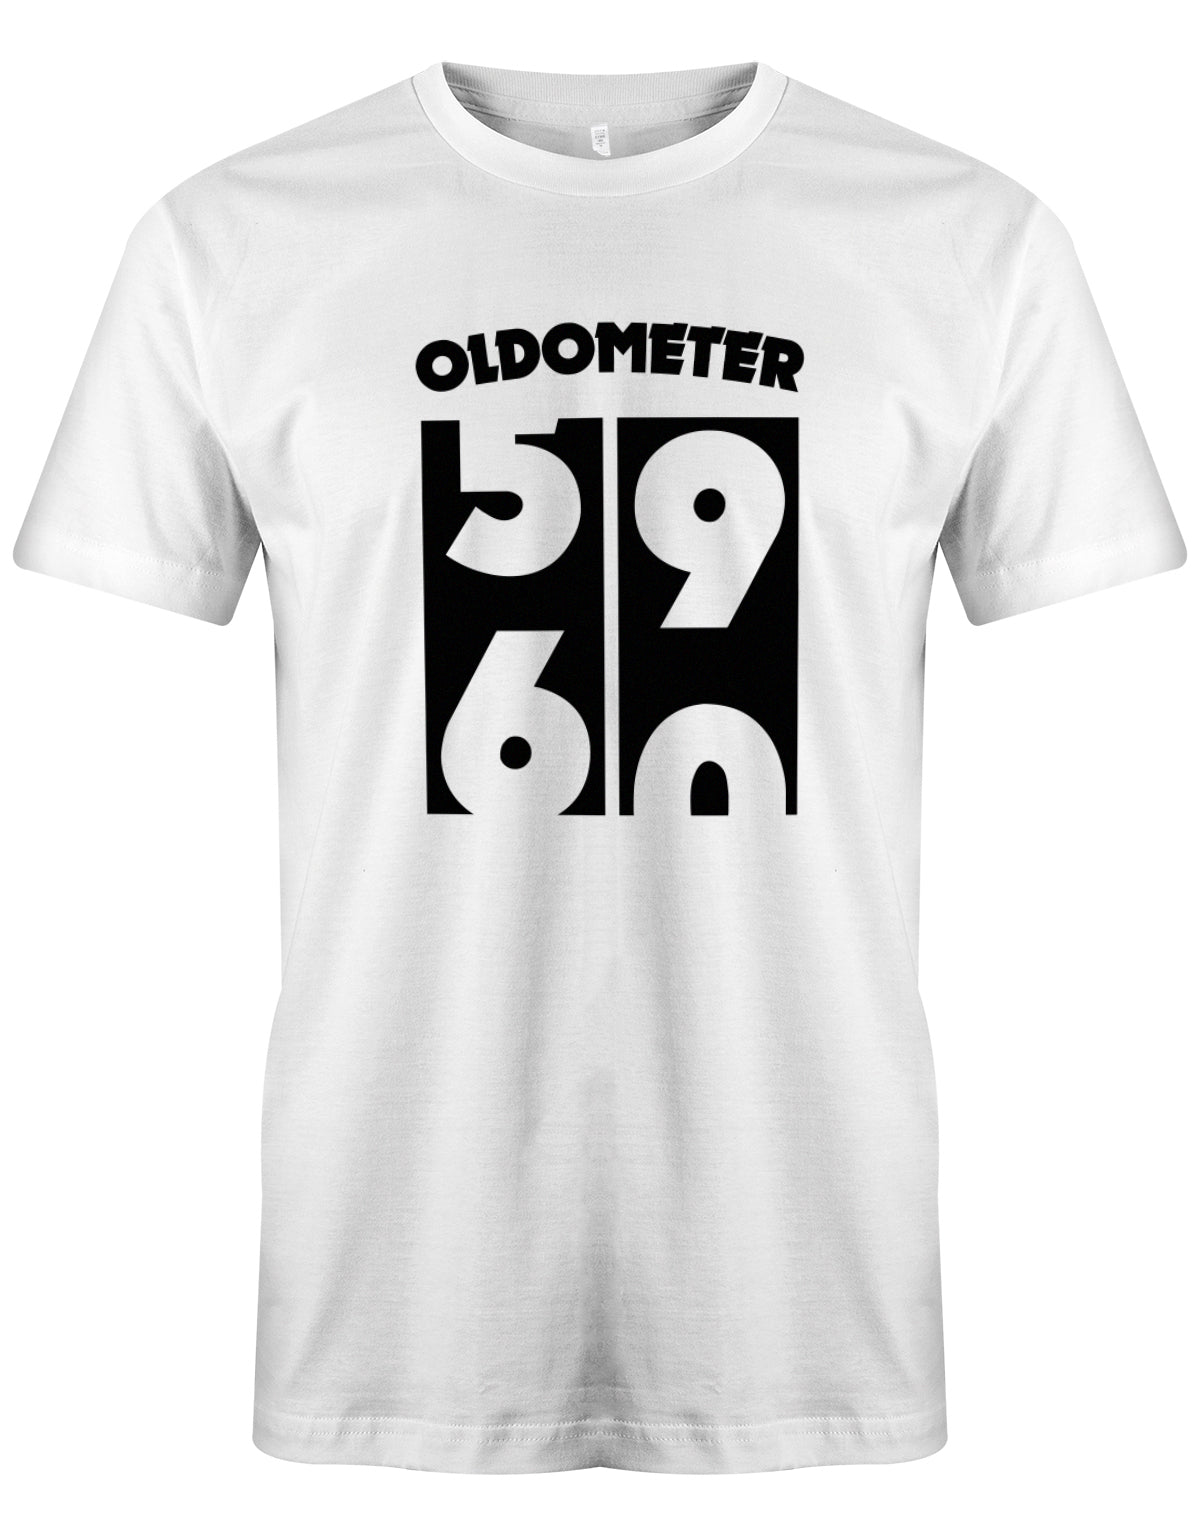 Lustiges T-Shirt zum 60. Geburtstag für den Mann Bedruckt mit Oldometer der wechsel von der 59 zu 60 Jahren. Weiss